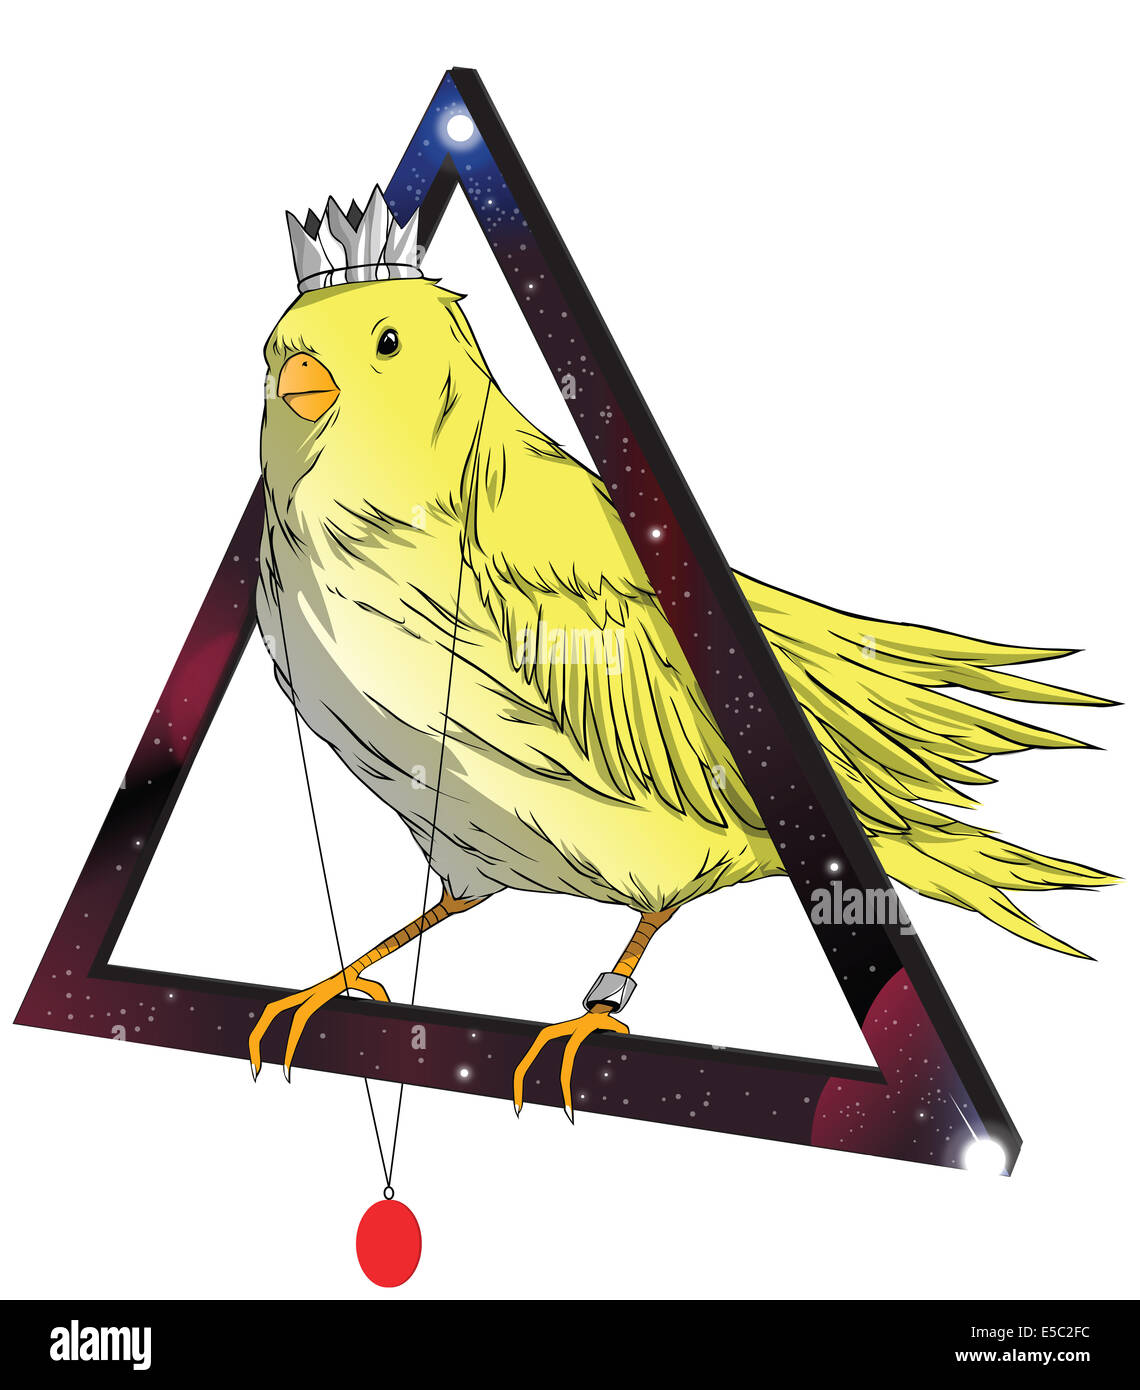 Illustration de l'oiseau portant couronne et médaillon sur triangle permanent contre fond blanc Banque D'Images